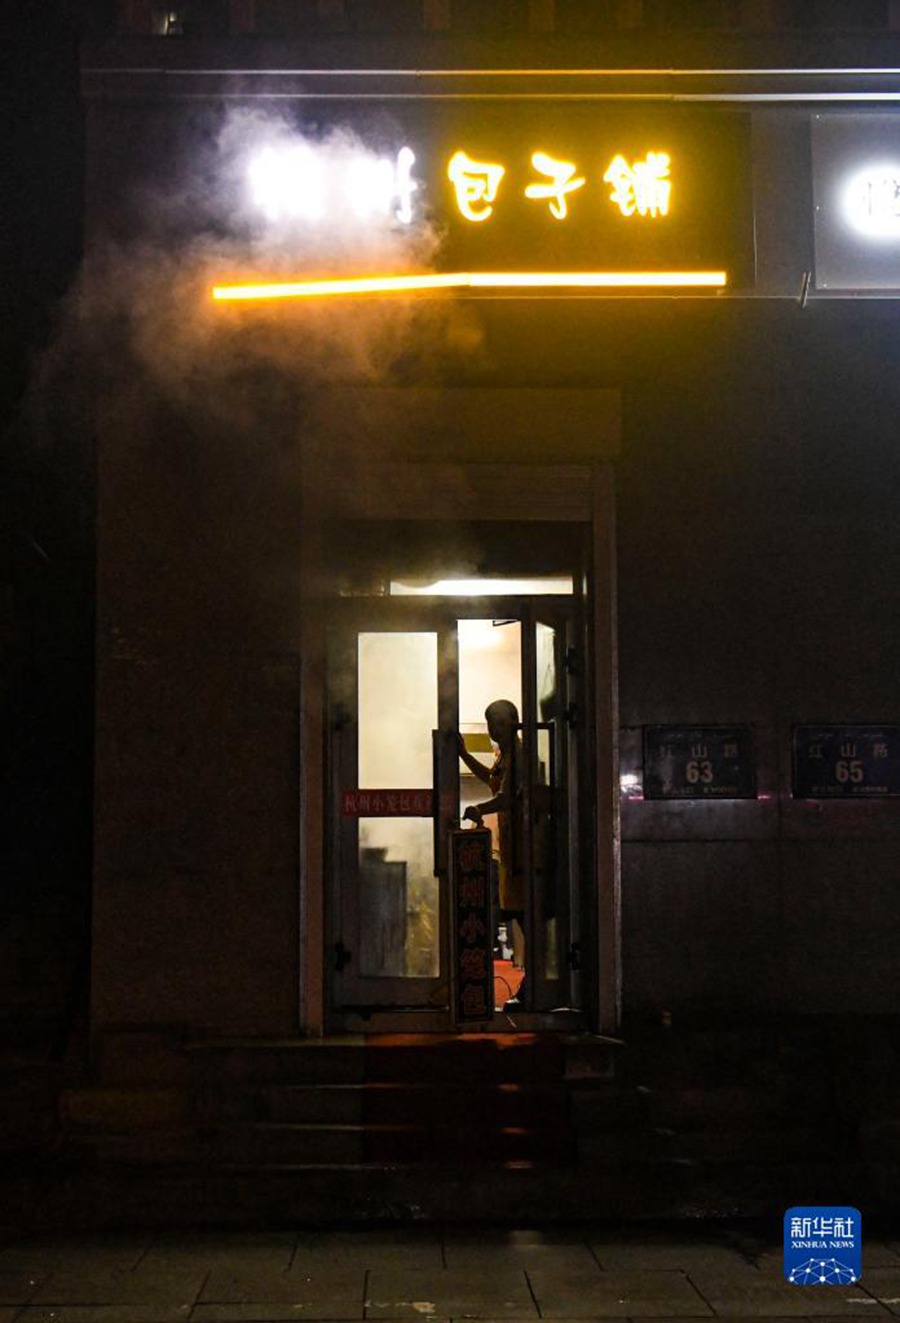 12월 22일 아침 7시 27분, 우루무치시 훙산(紅山)로, 한 바오쯔(包子: 만두의 일종) 가게 주인이 영업 준비 중이다. [사진 출처: 신화사]